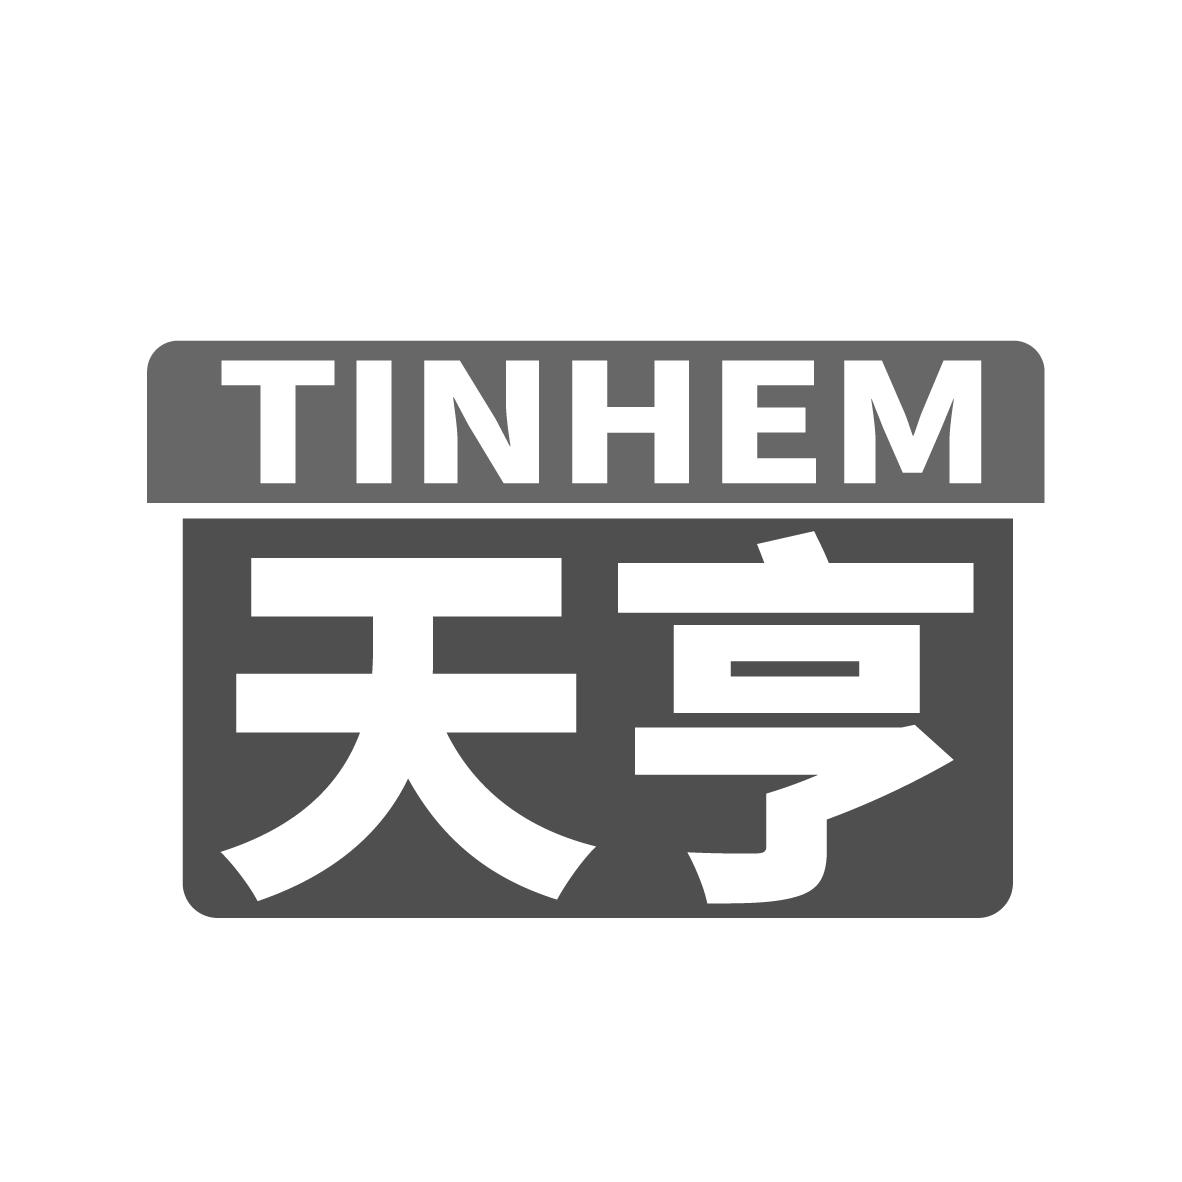  TINHEM